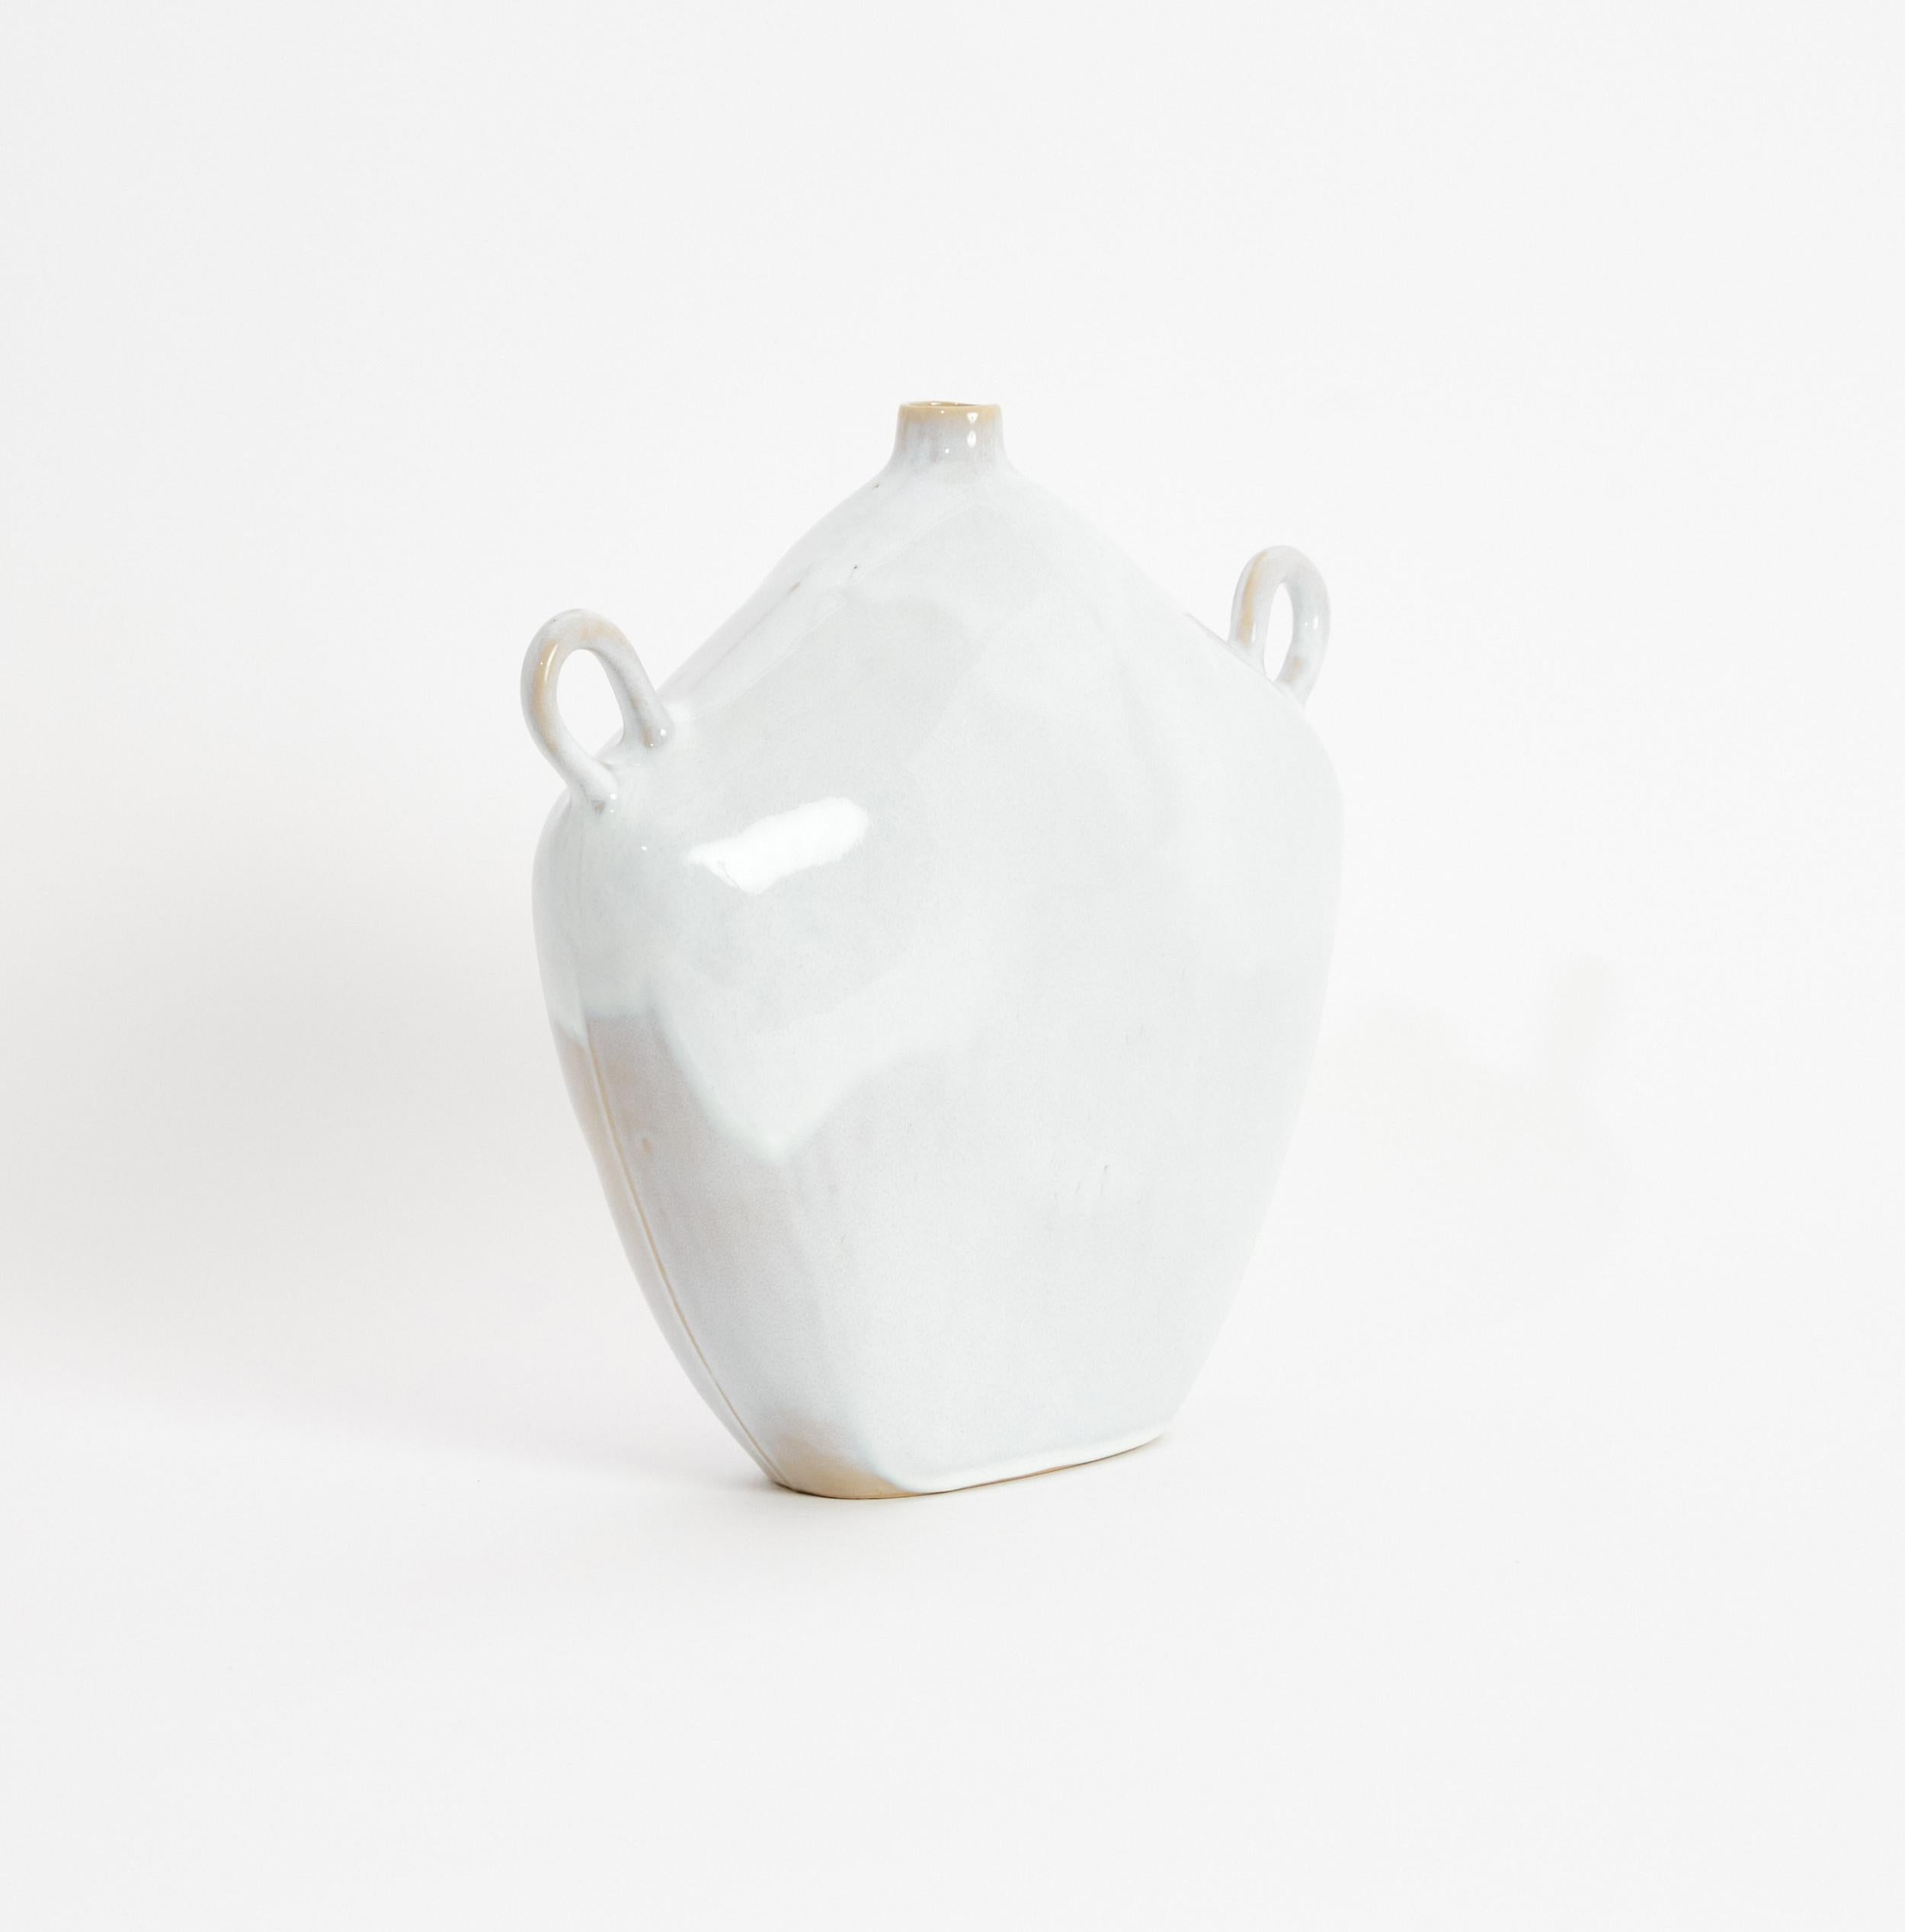 Maria Gefäß in Shiny White 
Entworfen von Projekt 213A im Jahr 2020
Handgefertigtes Steingut

Diese Vase ist von der griechisch-römischen Epoche inspiriert, hat ein zeitloses Aussehen und ist mit einer modernen, strukturierten, glänzenden Glasur